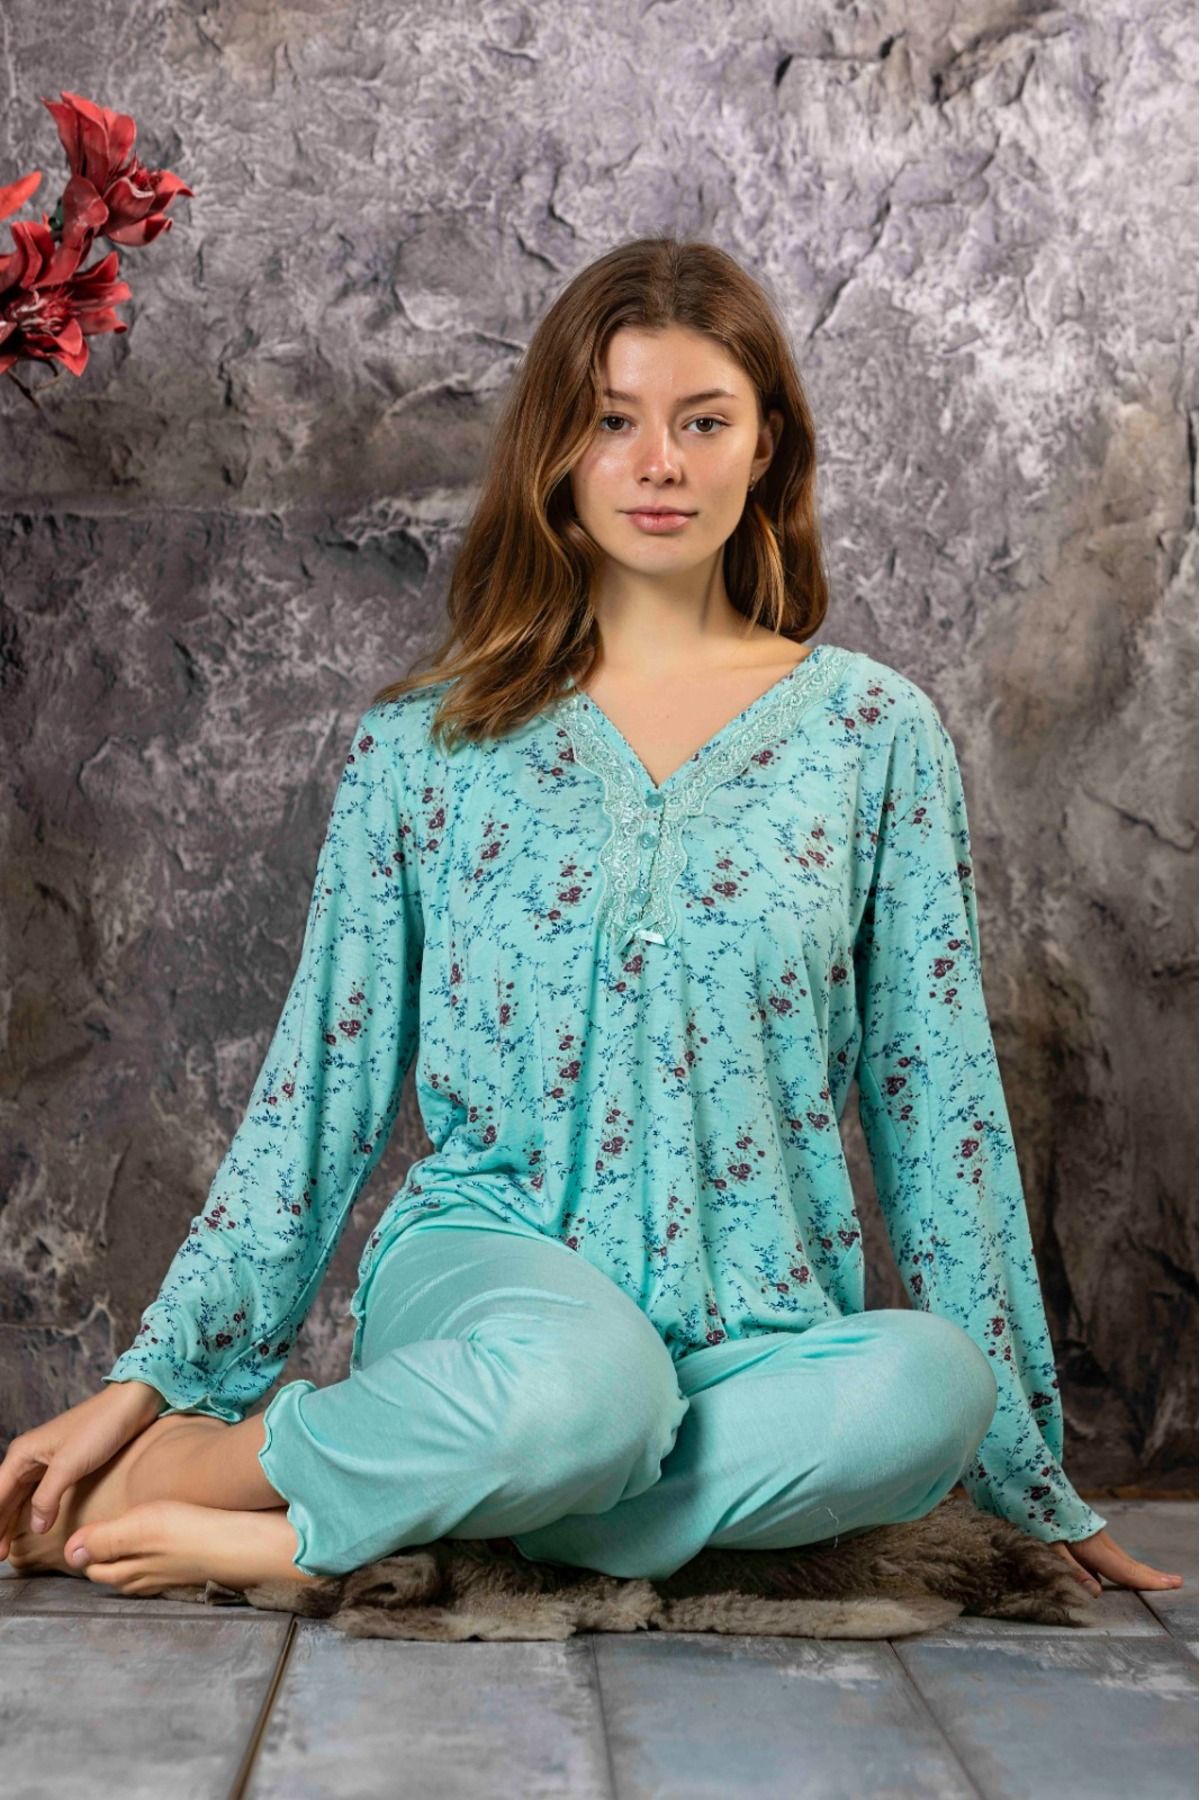 Meba Kadın Uzun Kollu Yeşil Çiçekli Penye Pijama Takımı P910-16